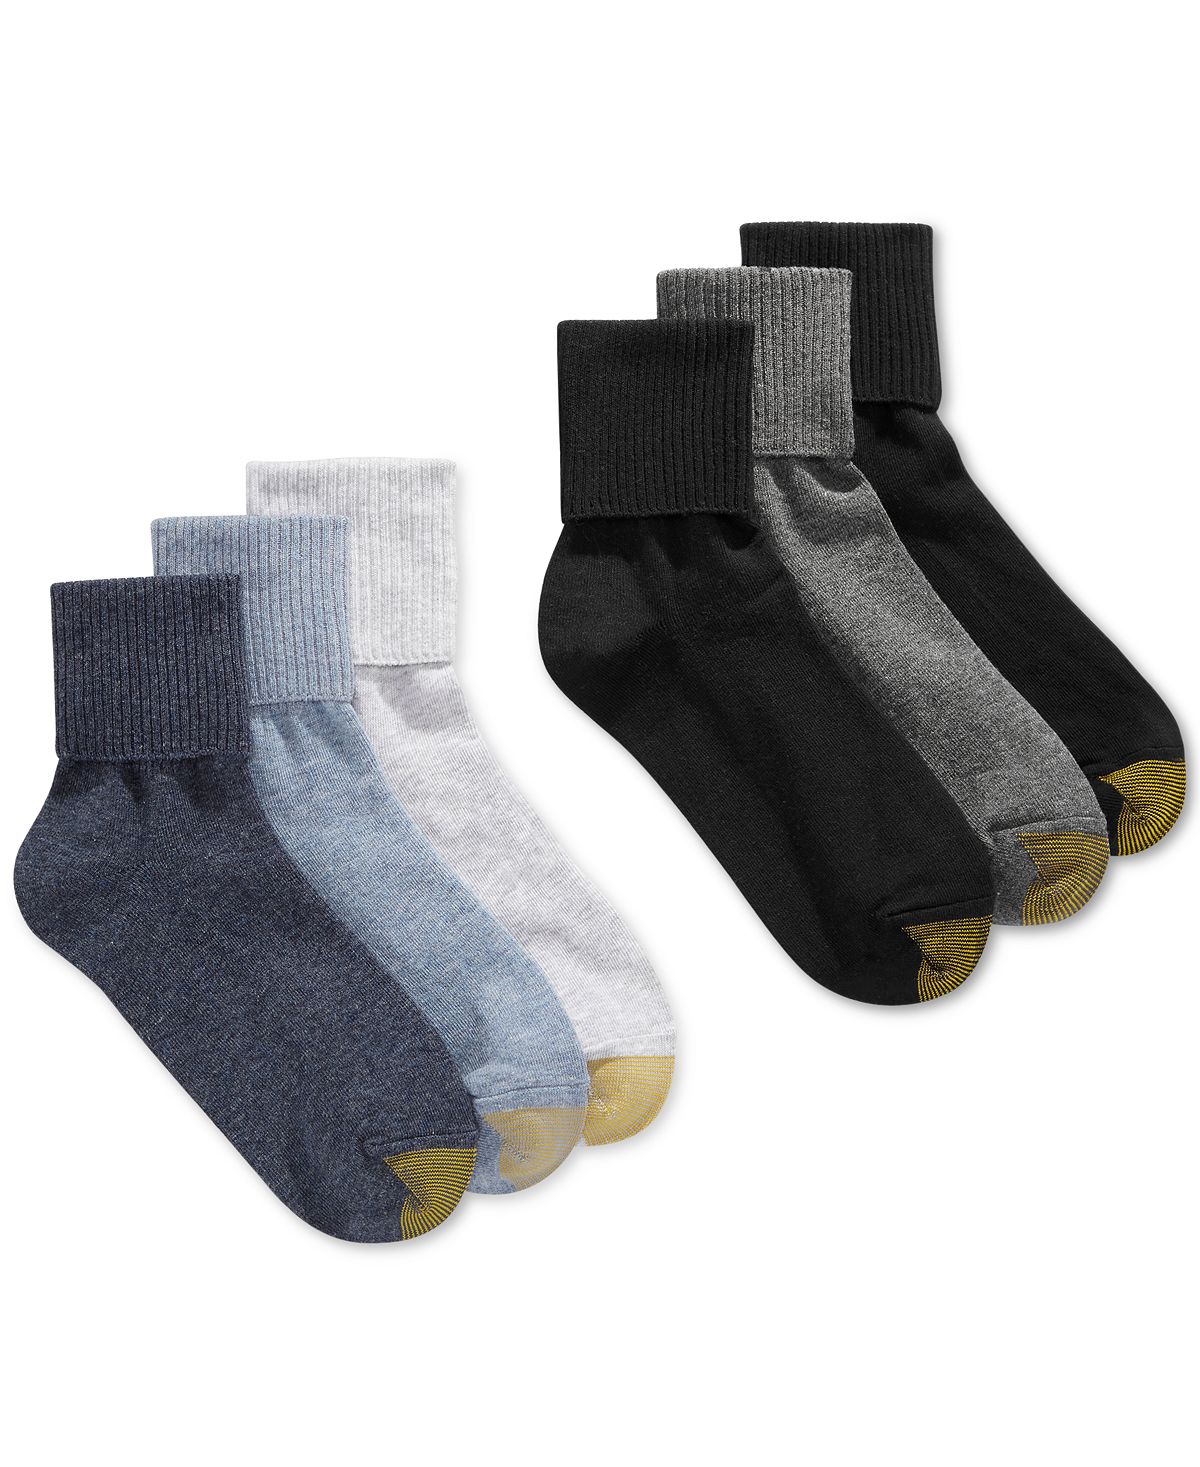 Женские повседневные носки с поворотными манжетами (6 пар), также доступны в расширенных размерах Gold Toe цена и фото